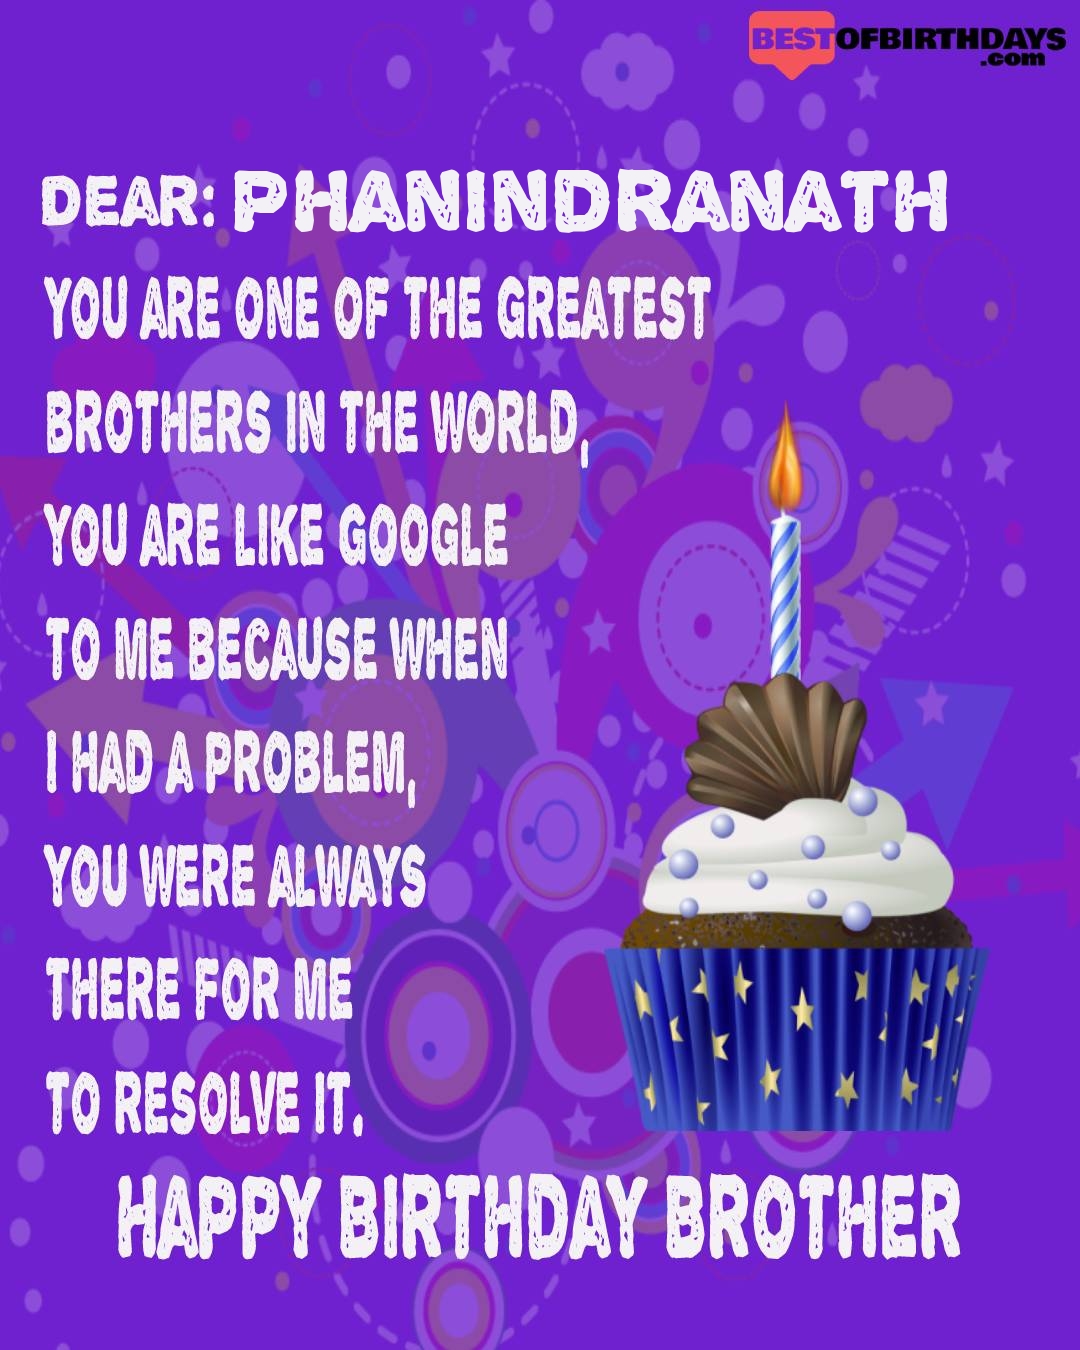 Happy birthday phanindranath bhai brother bro